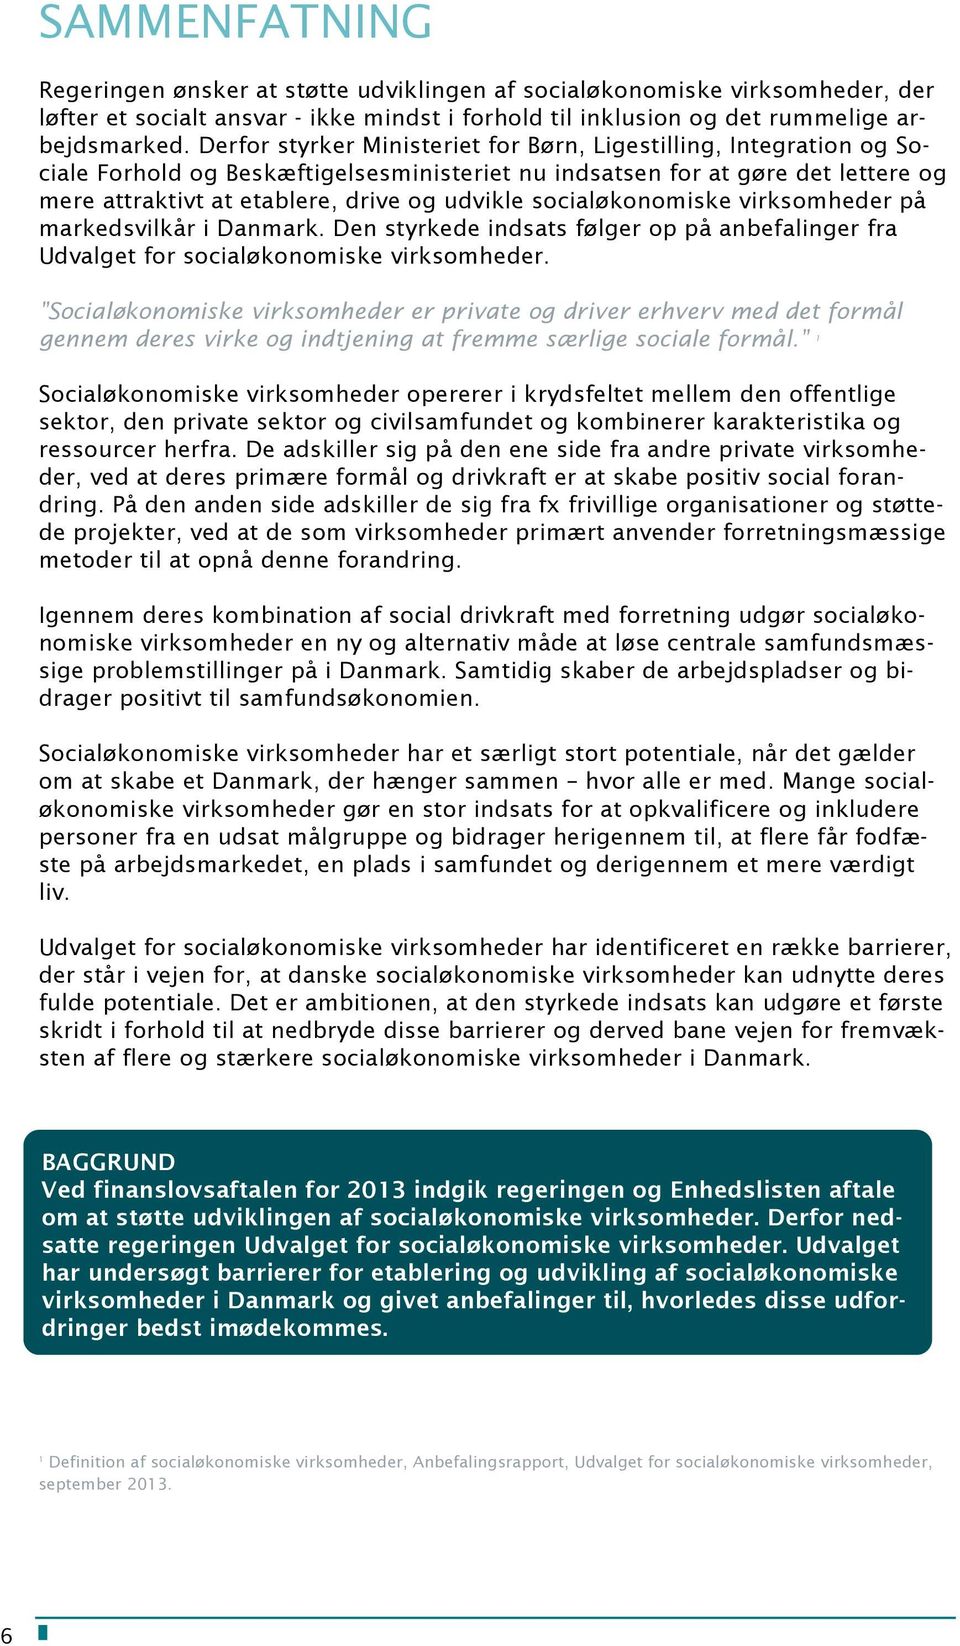 socialøkonomiske virksomheder på markedsvilkår i Danmark. Den styrkede indsats følger op på anbefalinger fra Udvalget for socialøkonomiske virksomheder.